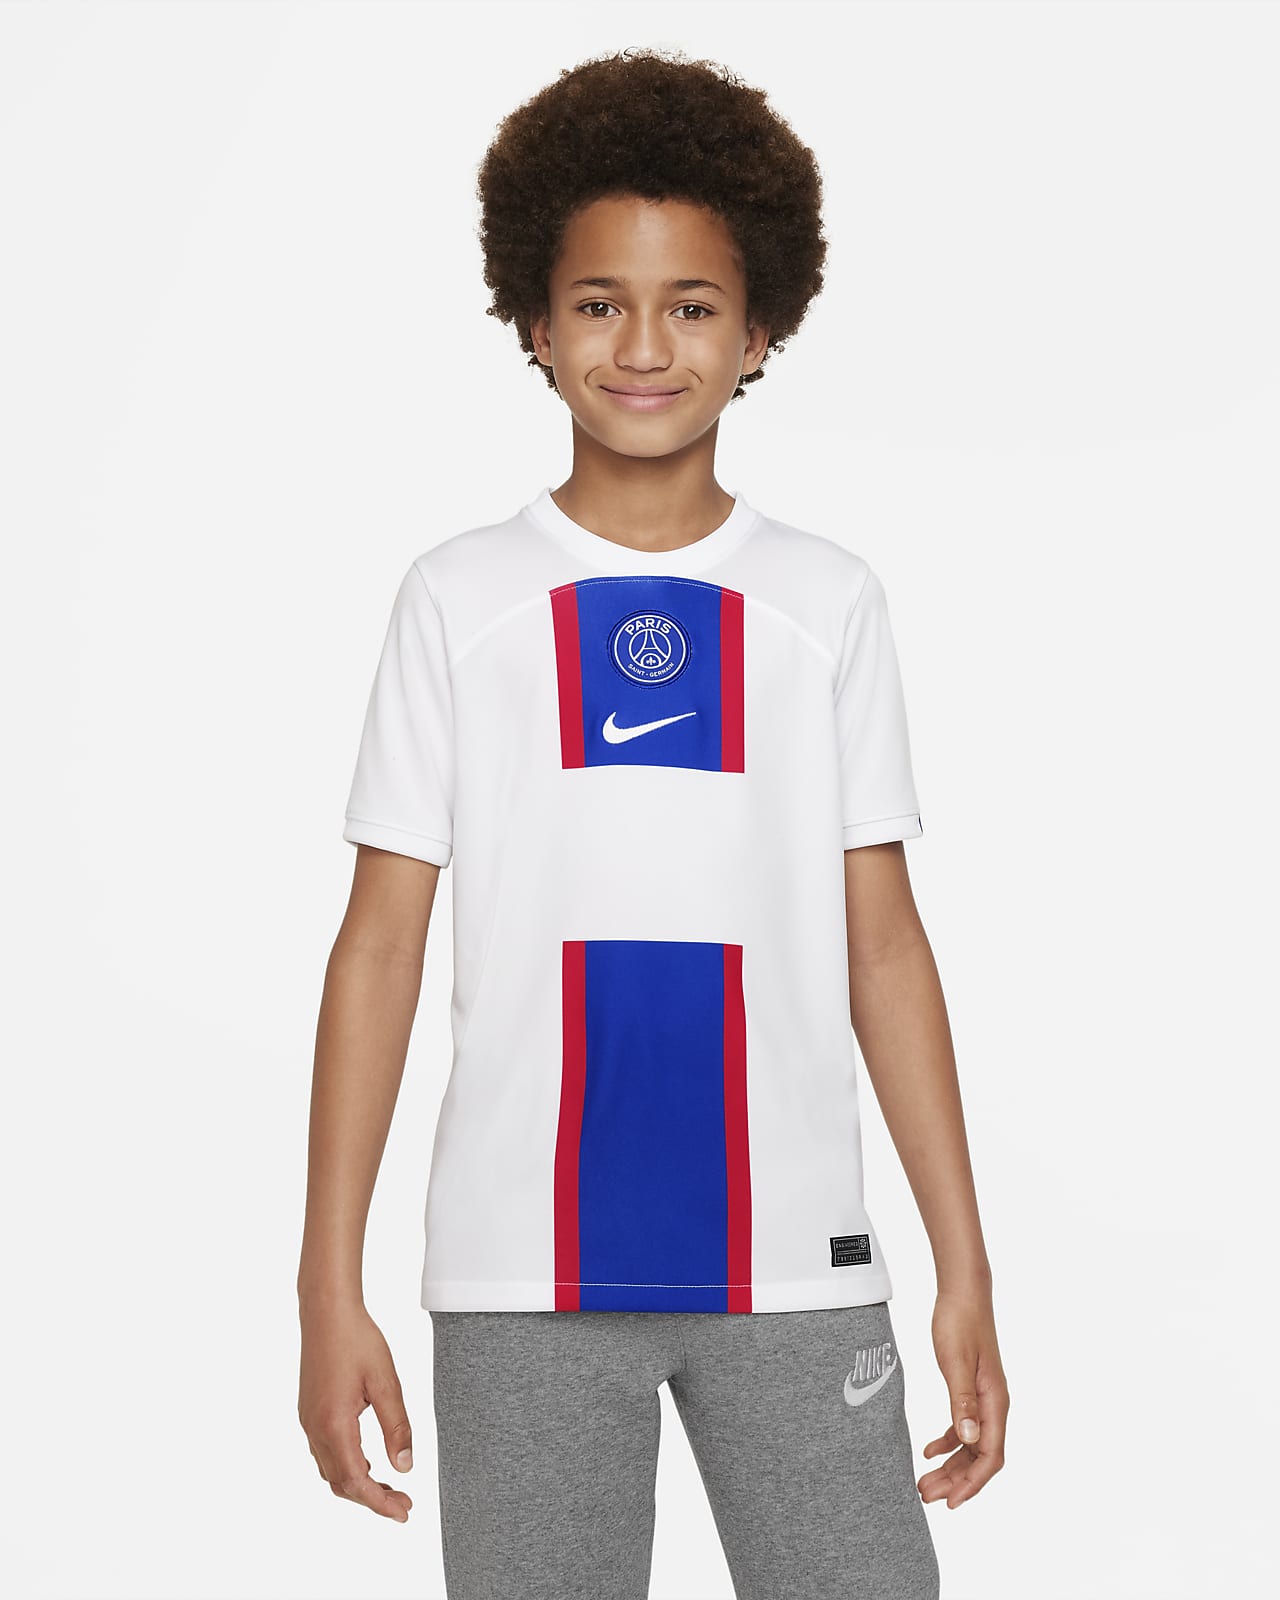 Paris Saint-Germain 2022/23 Nike Third Kit - FOOTBALL FASHION